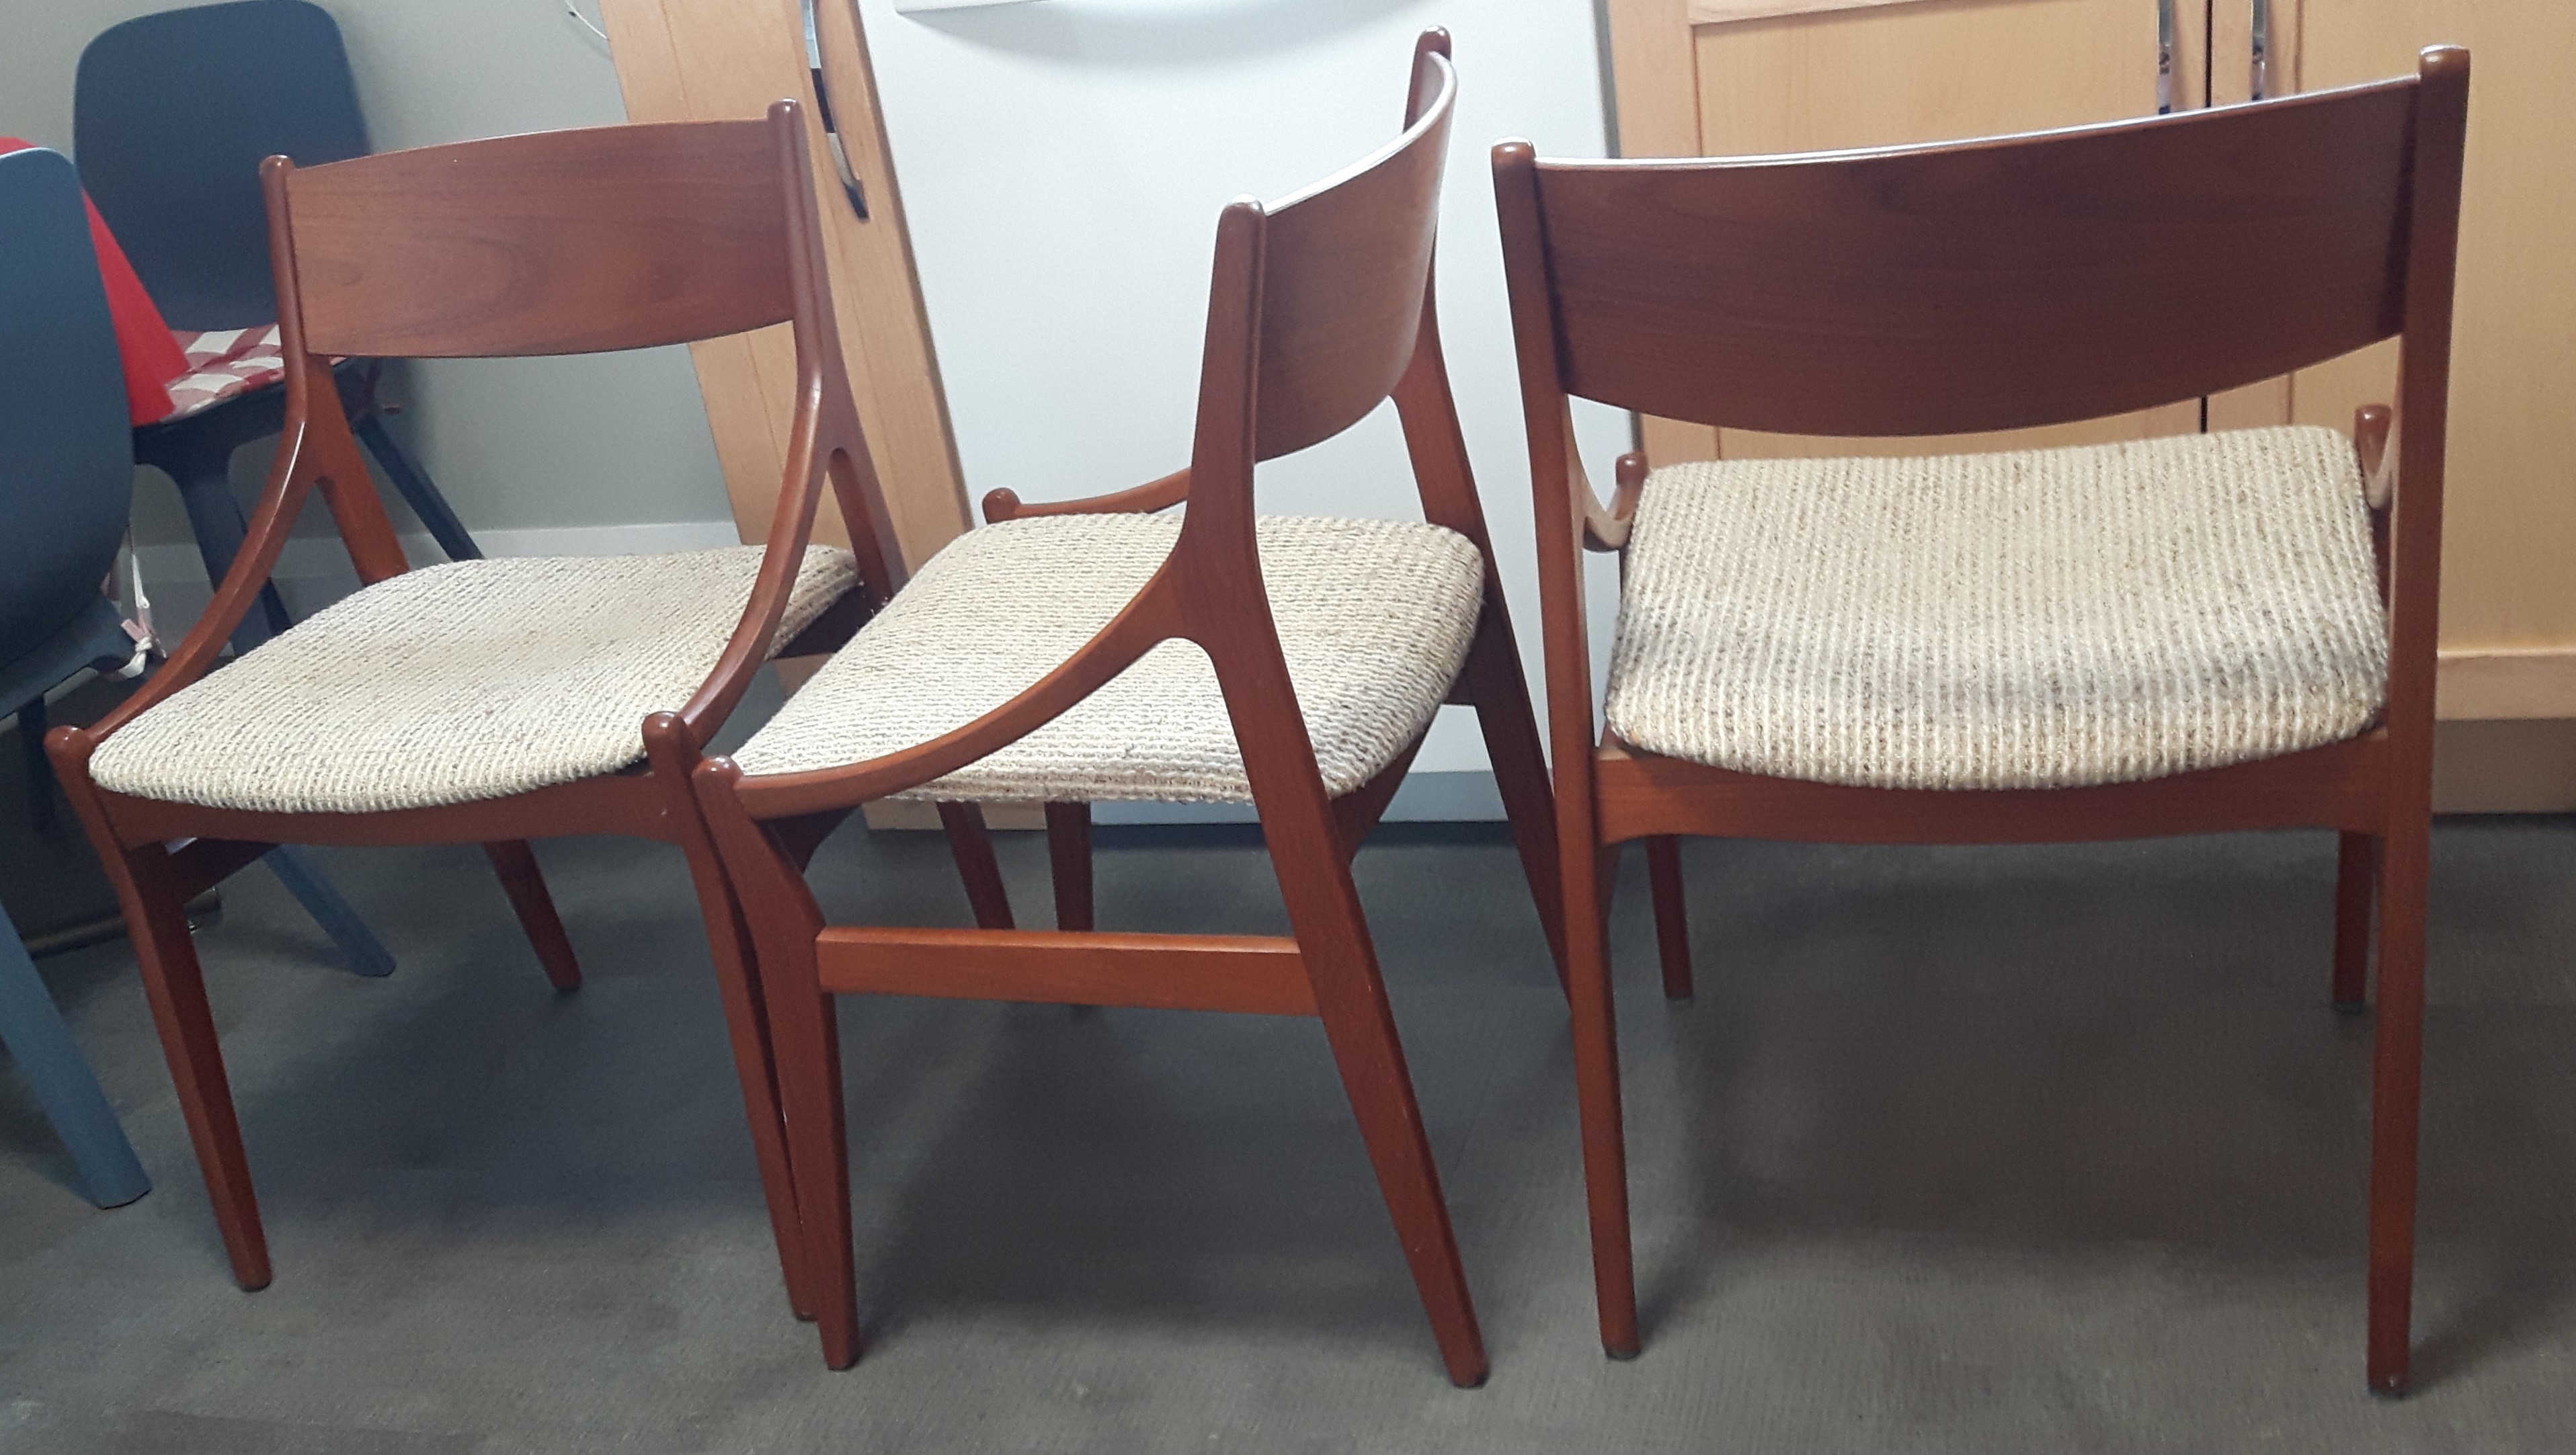 1630955551-chairs.jpg